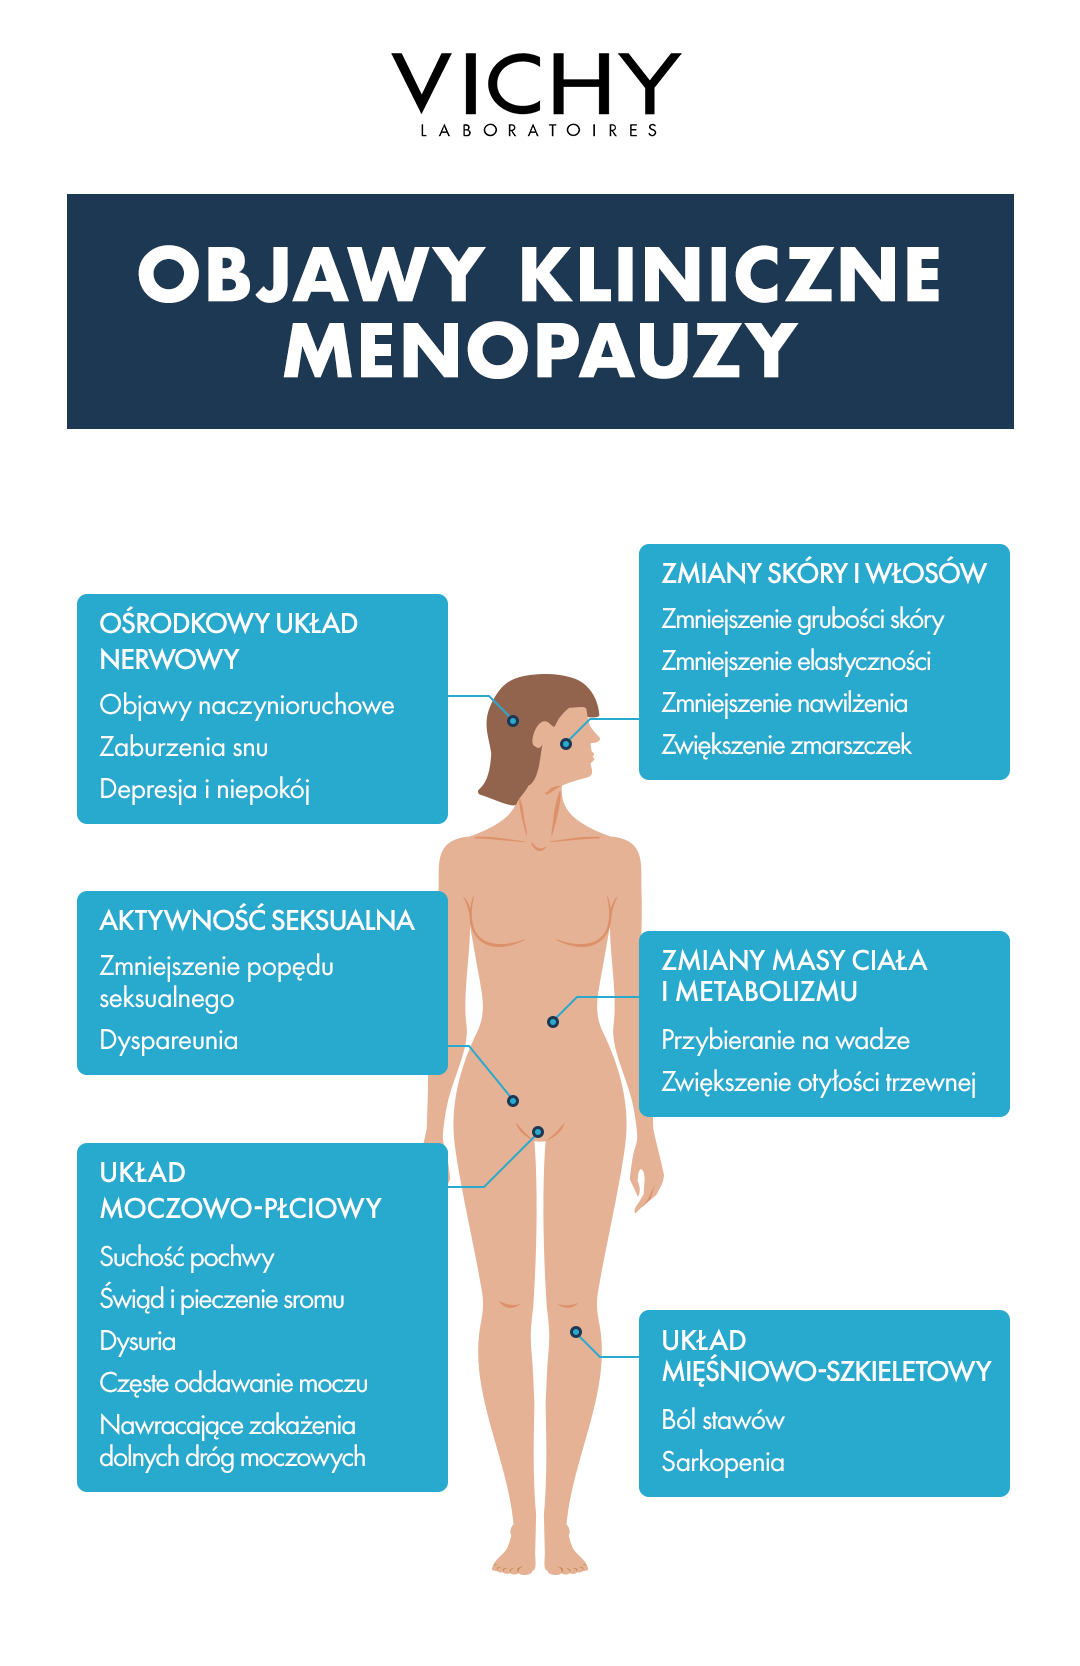 Jak wyglądają pierwsze objawy menopauzy? Sprawdź objawy menopauzy Vichy Laboratoires